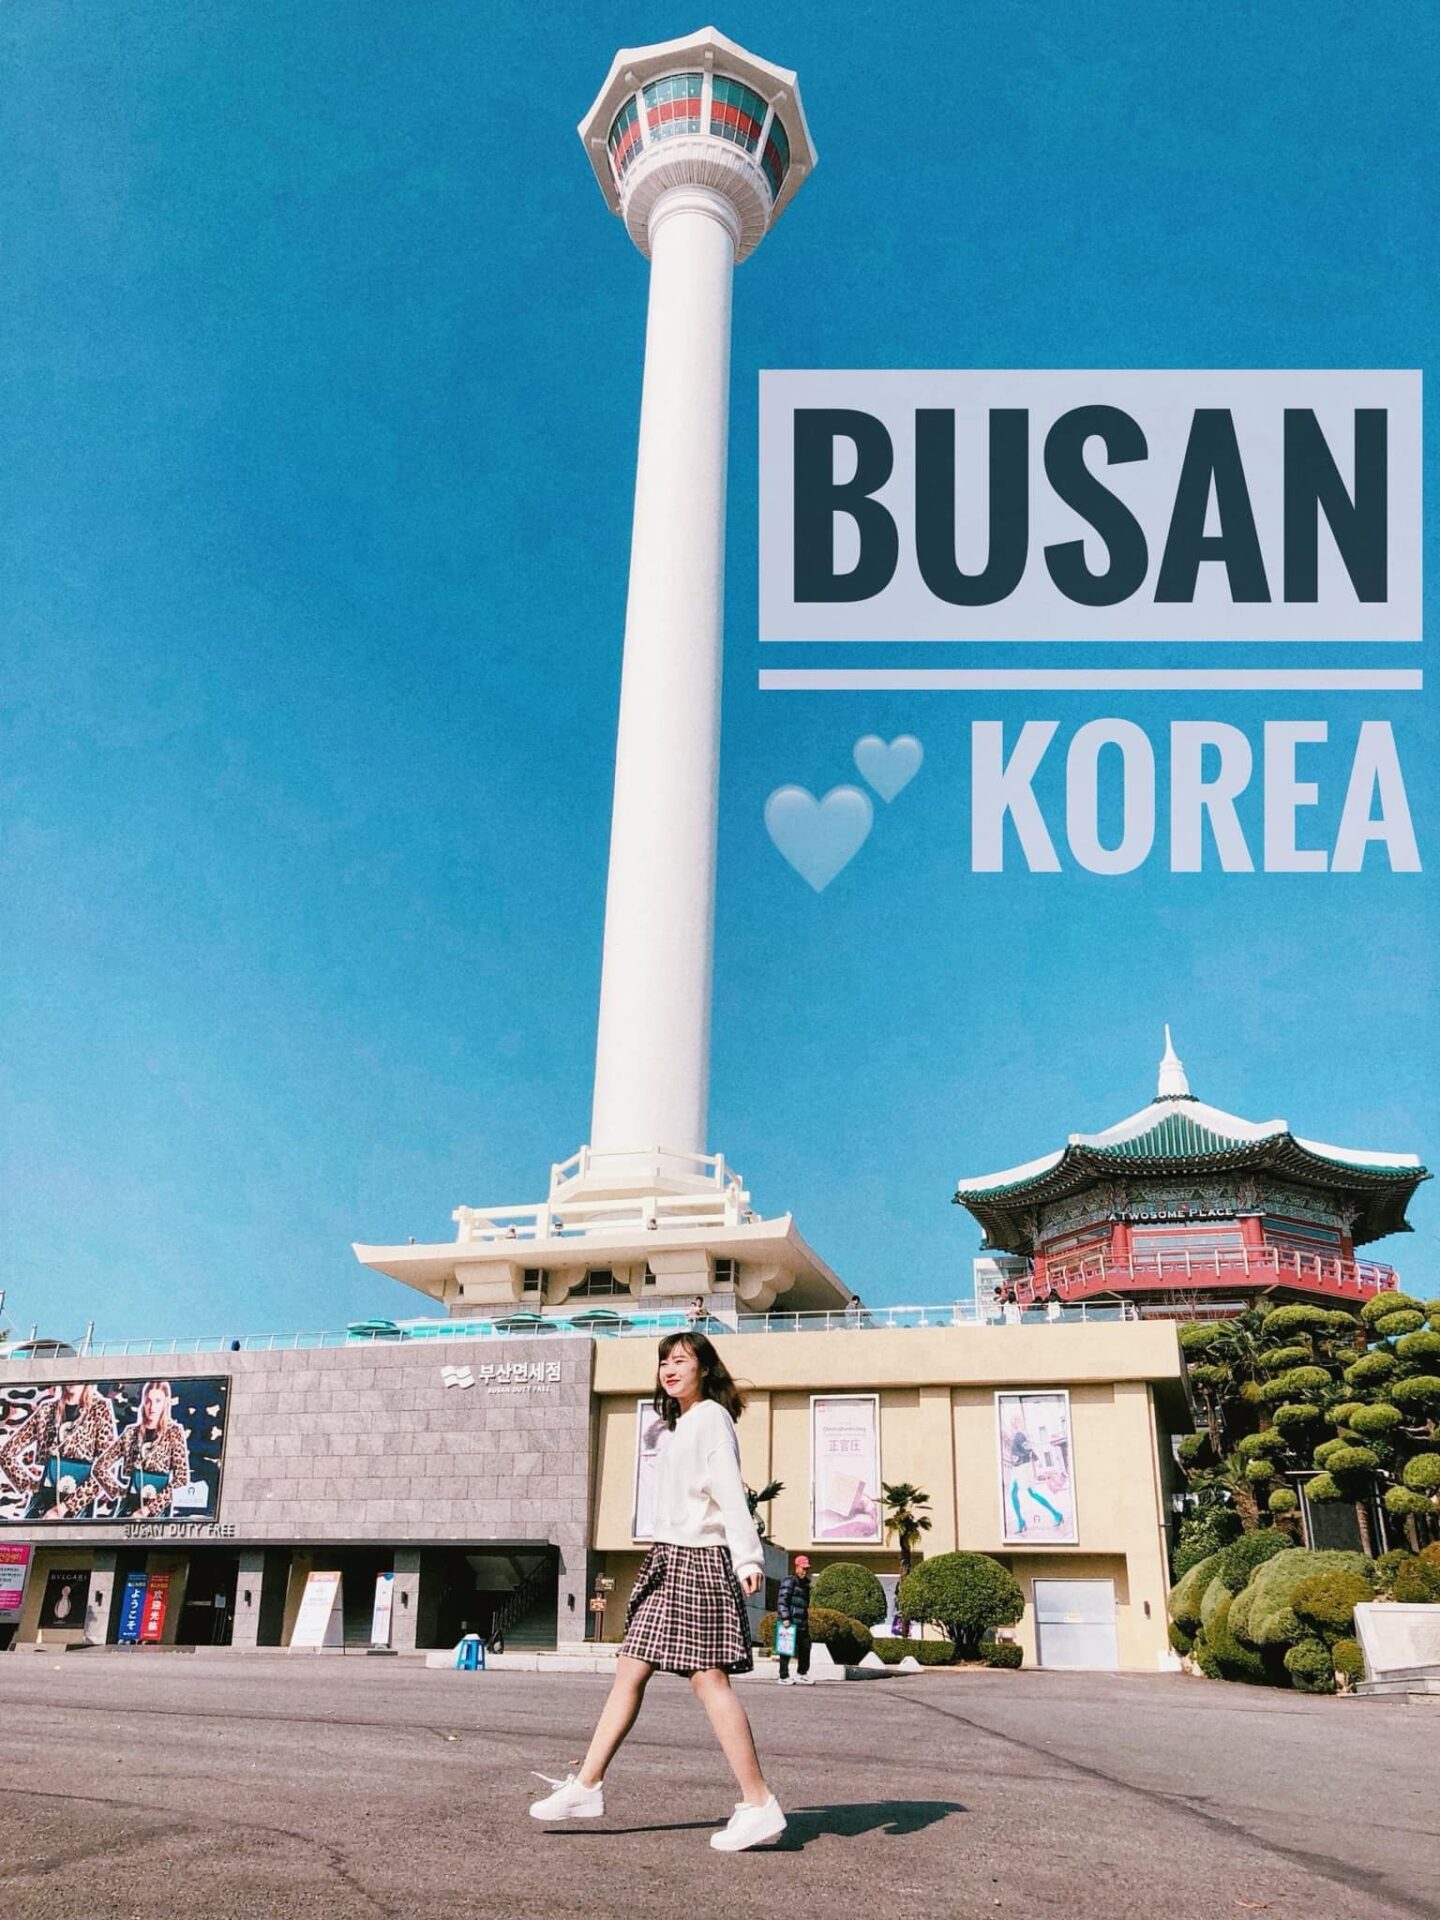 Tour Hàn Quốc Busan - Gyeongju - Seoul 6N5Đ